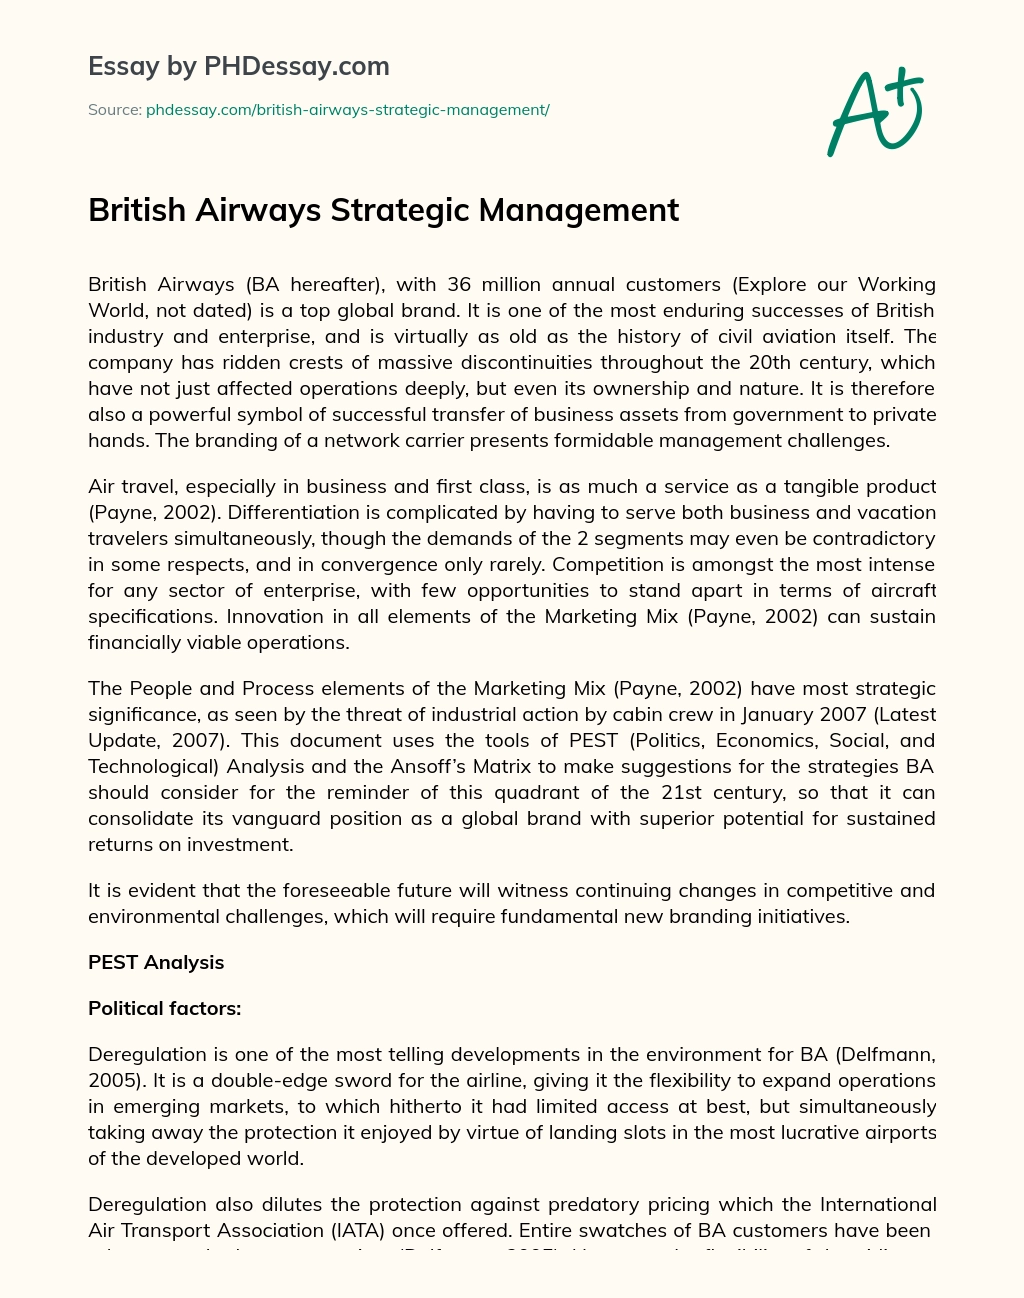 British Airways Strategic Management essay